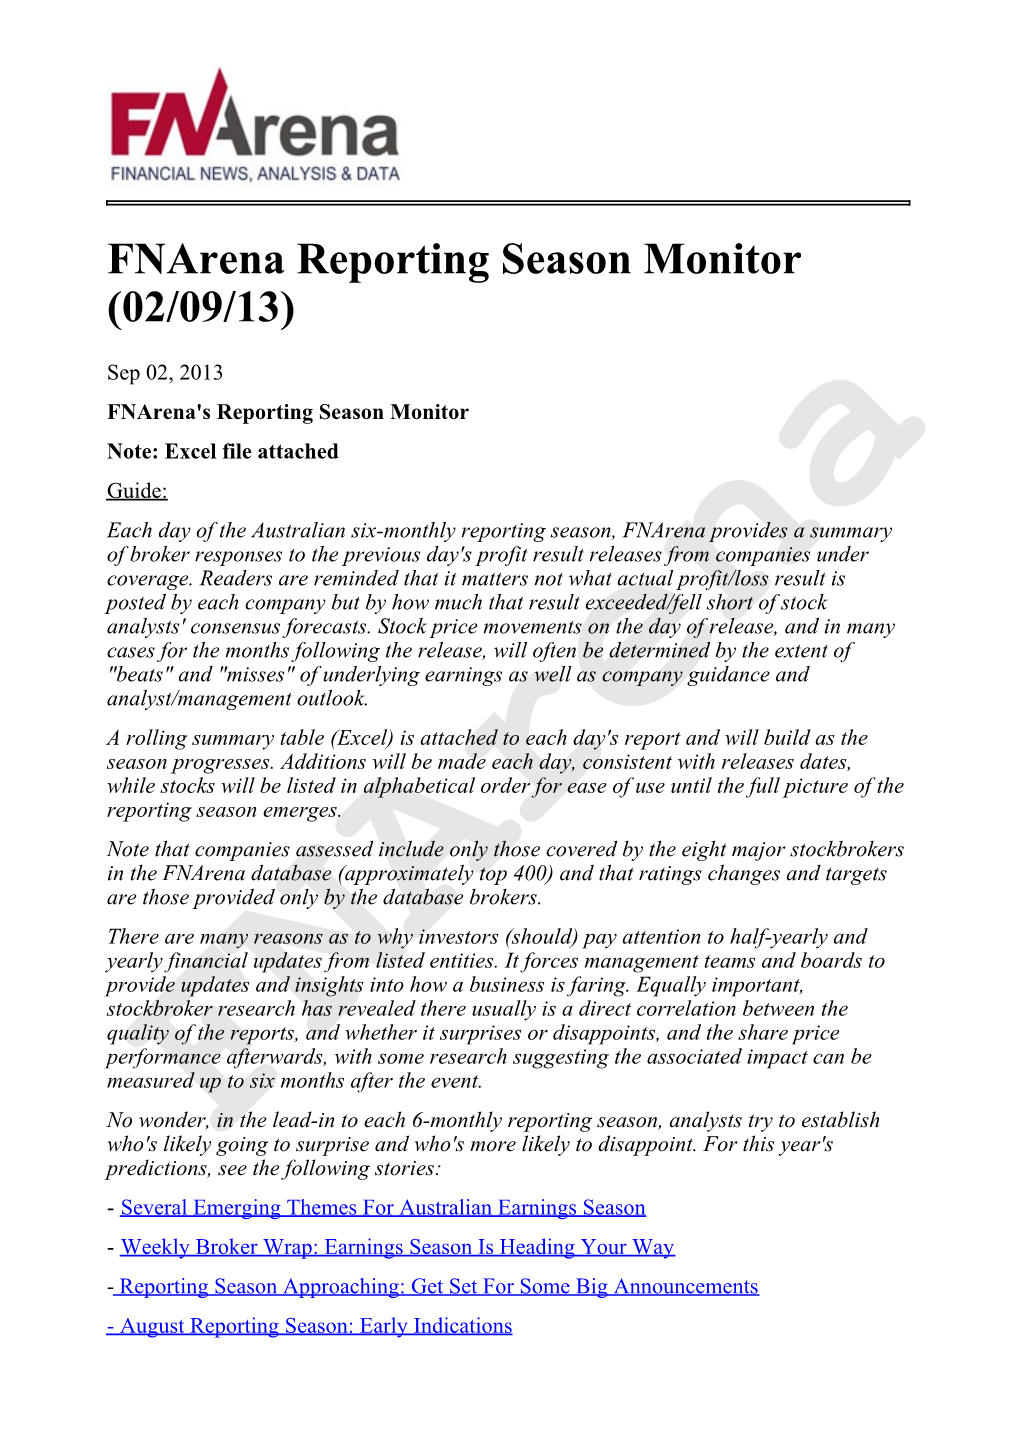 Fnarena Reporting Season Monitor (02/09/13)